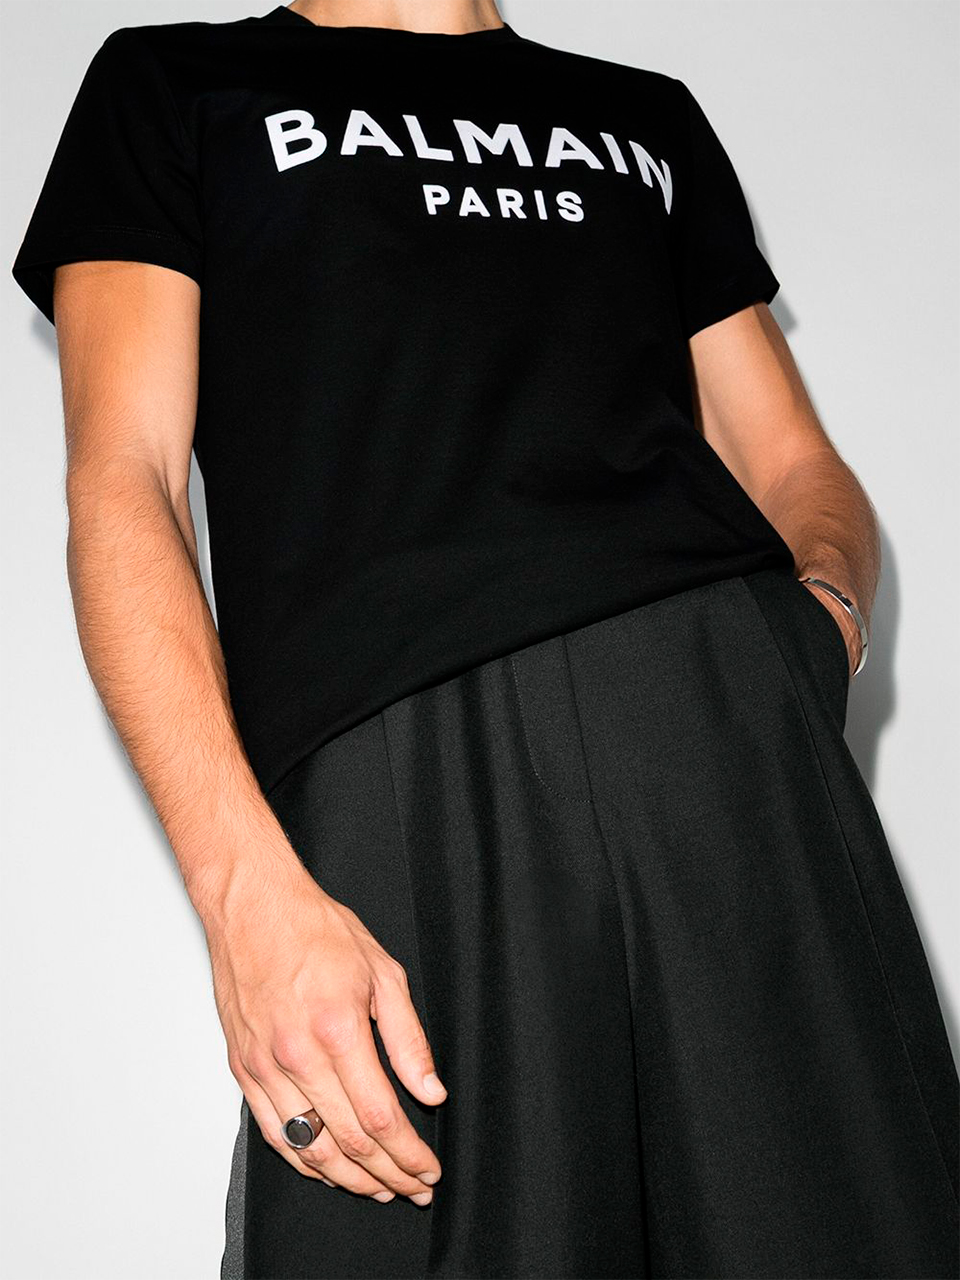 Imagem de: Camiseta Balmain Paris Preta com Logo Grande